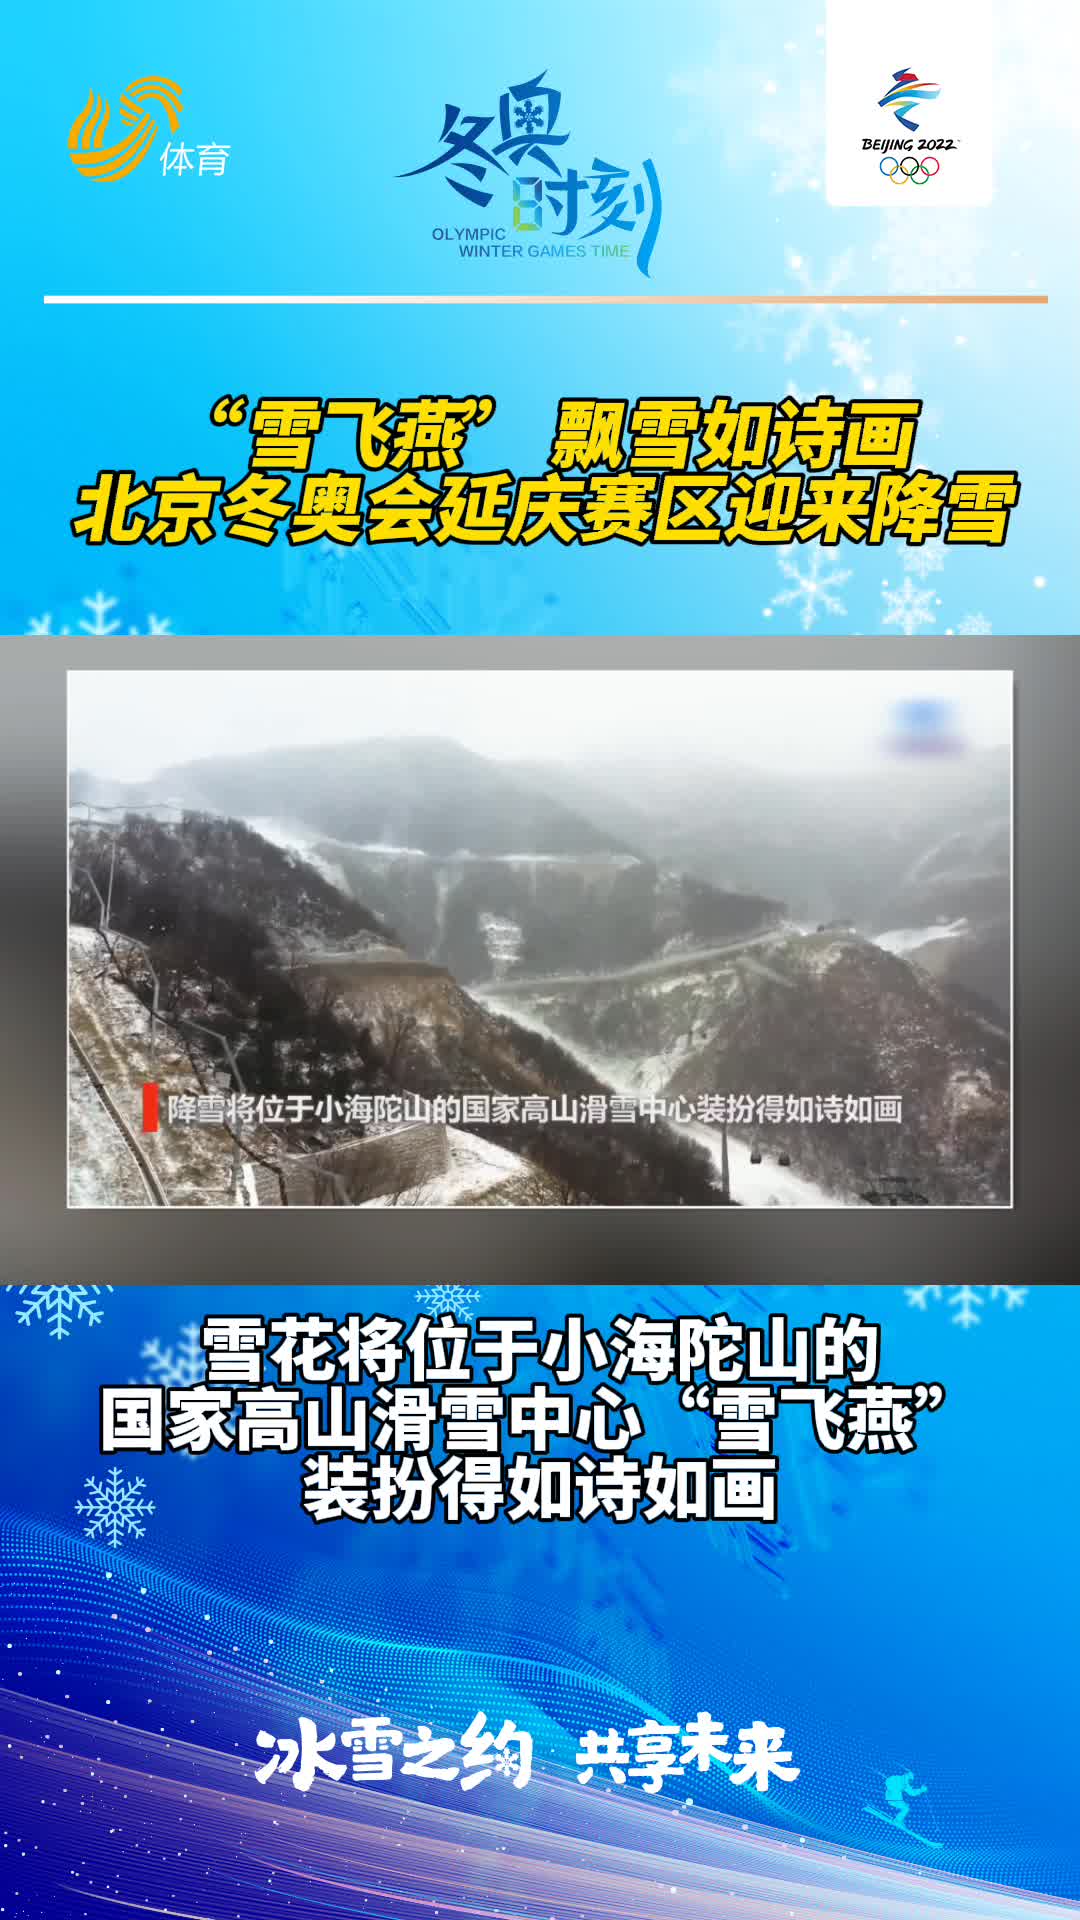 冬奥时刻丨飘雪如诗画 北京冬奥会延庆赛区迎来降雪